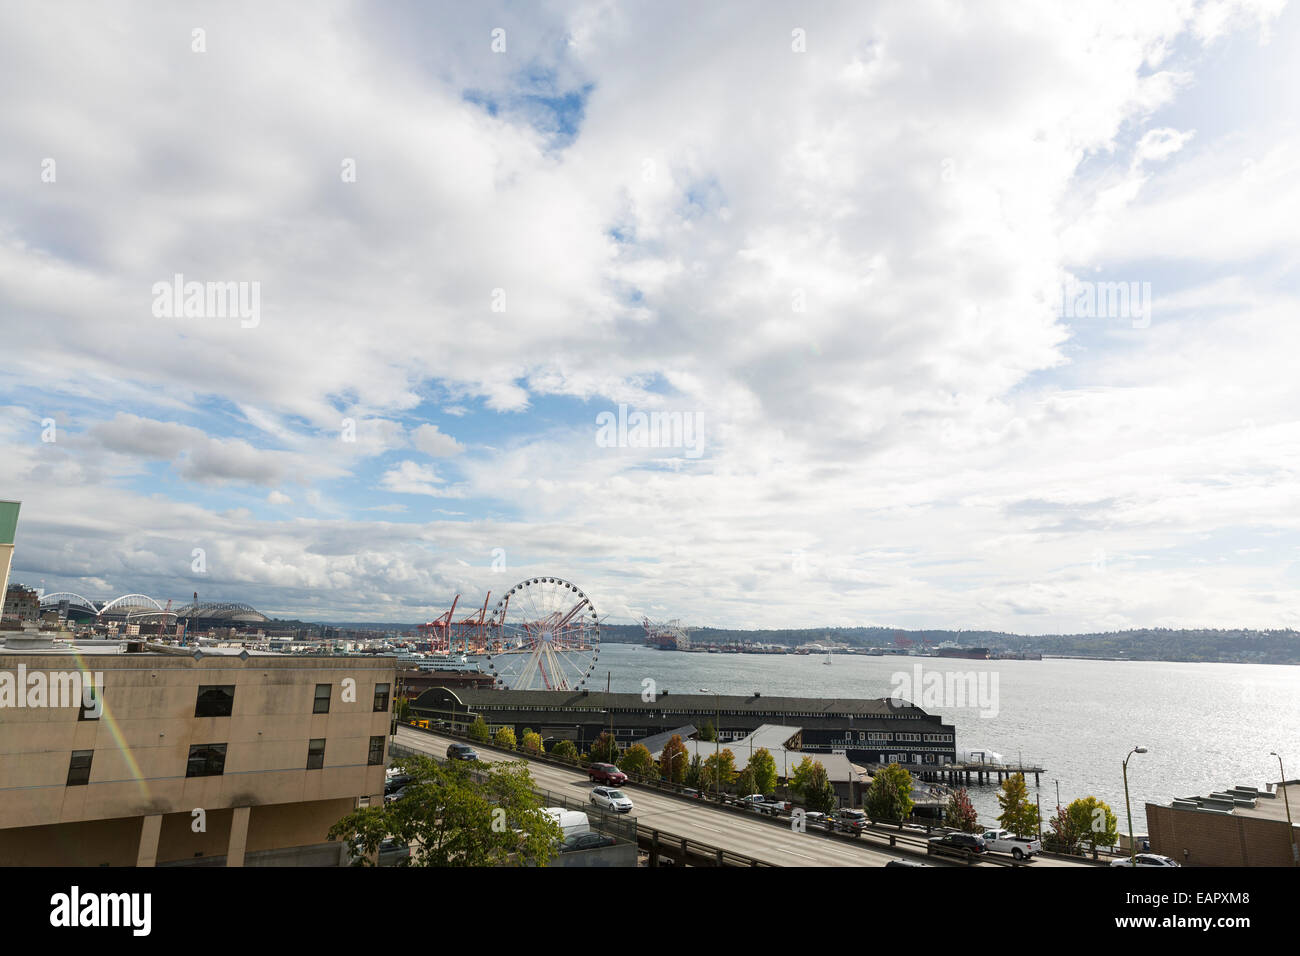 Panoramablick von Seattle mit einem Iconinc Great Wheel auf Pier 57 - teilweise bewölkter Himmel Stockfoto